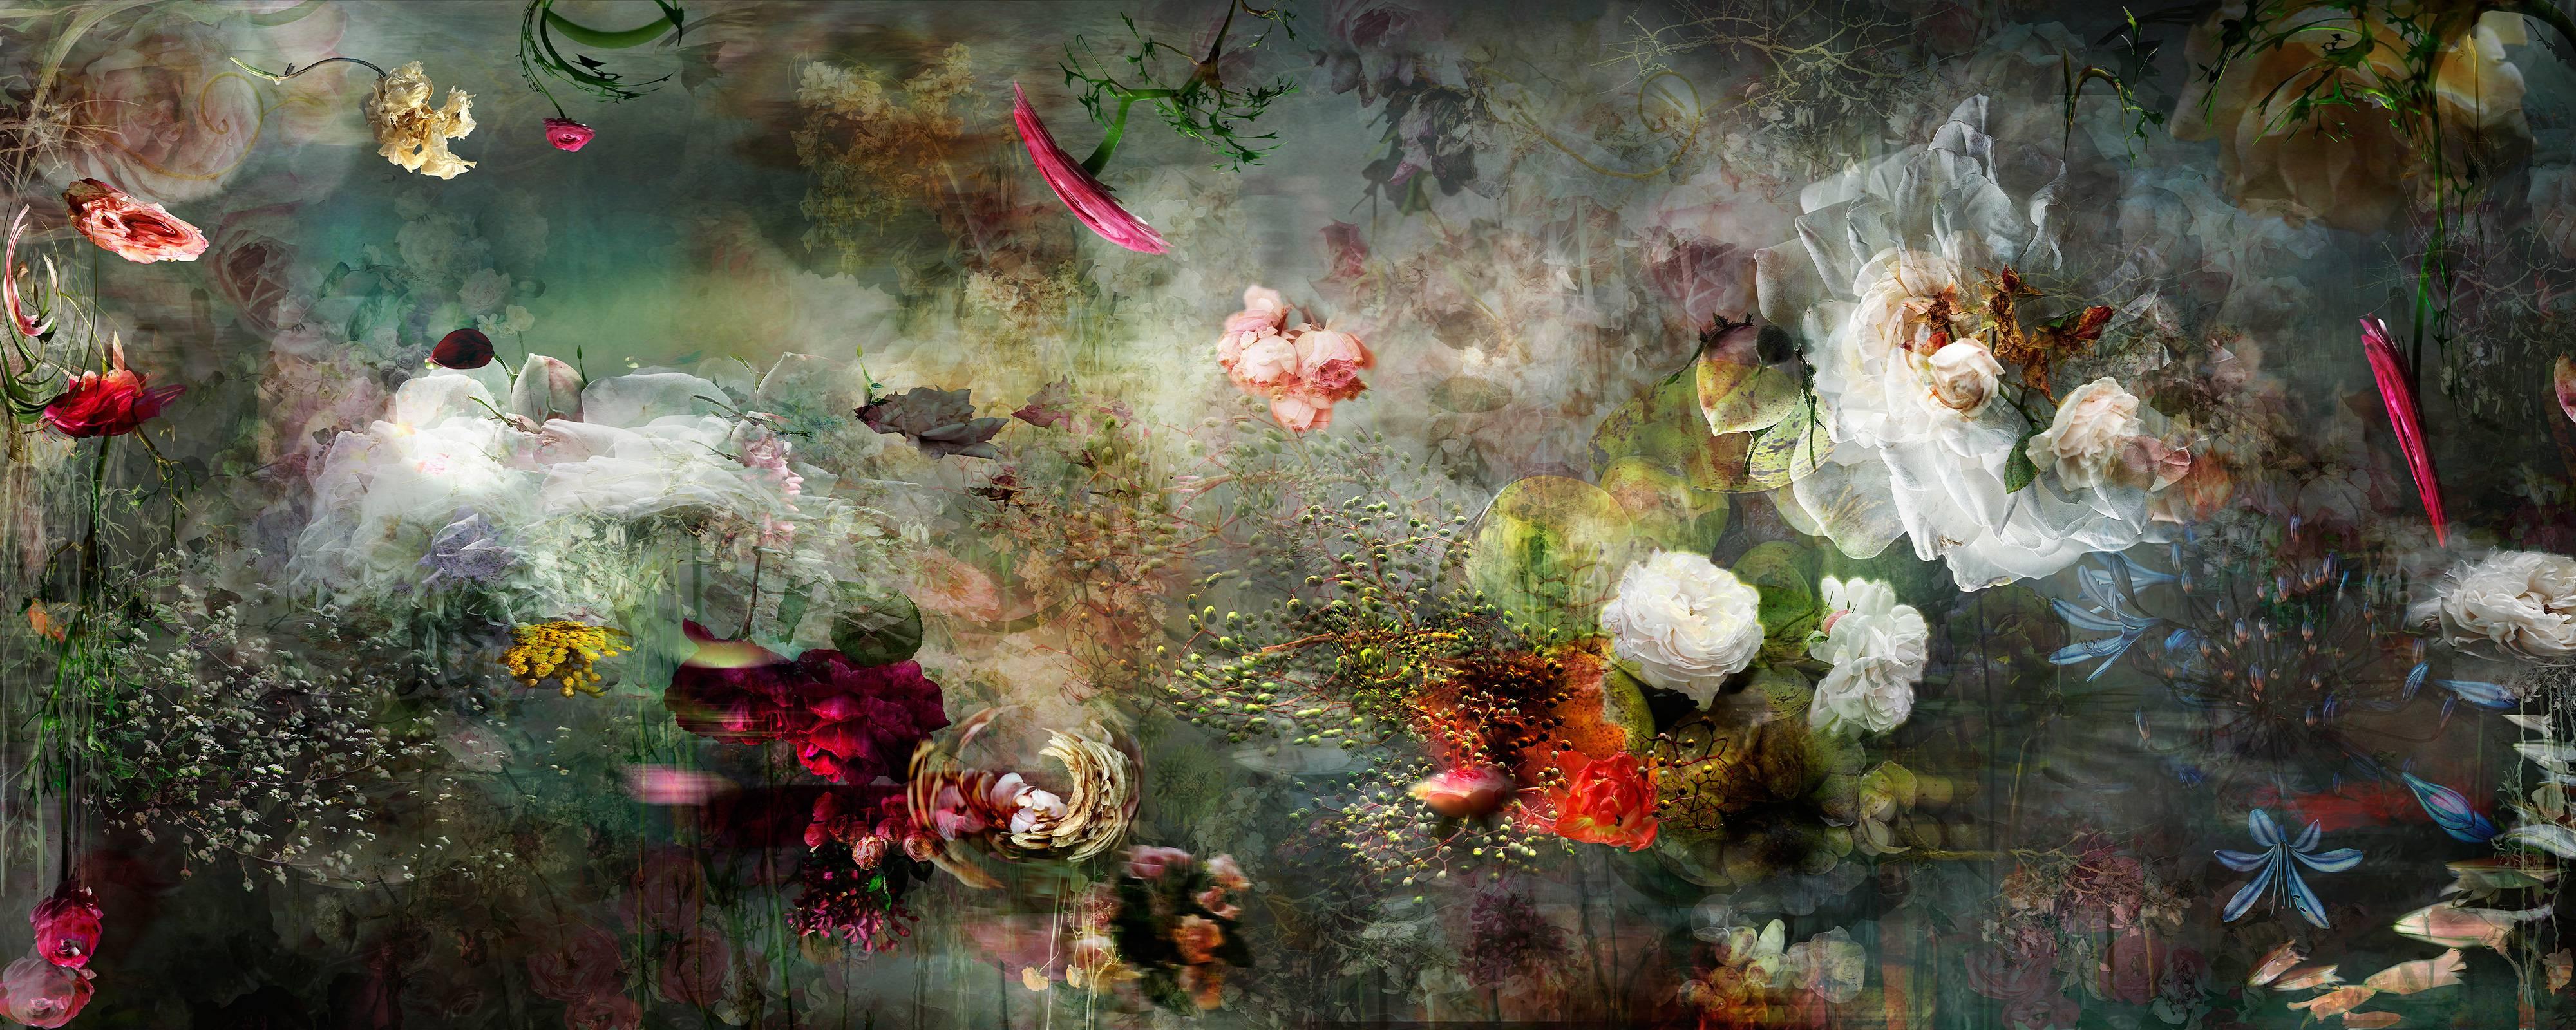 Isabelle Menin Still-Life Photograph – Song for dead heroes #2 abstrakte florale Landschaftsfotokomposition in dunkler Farbe